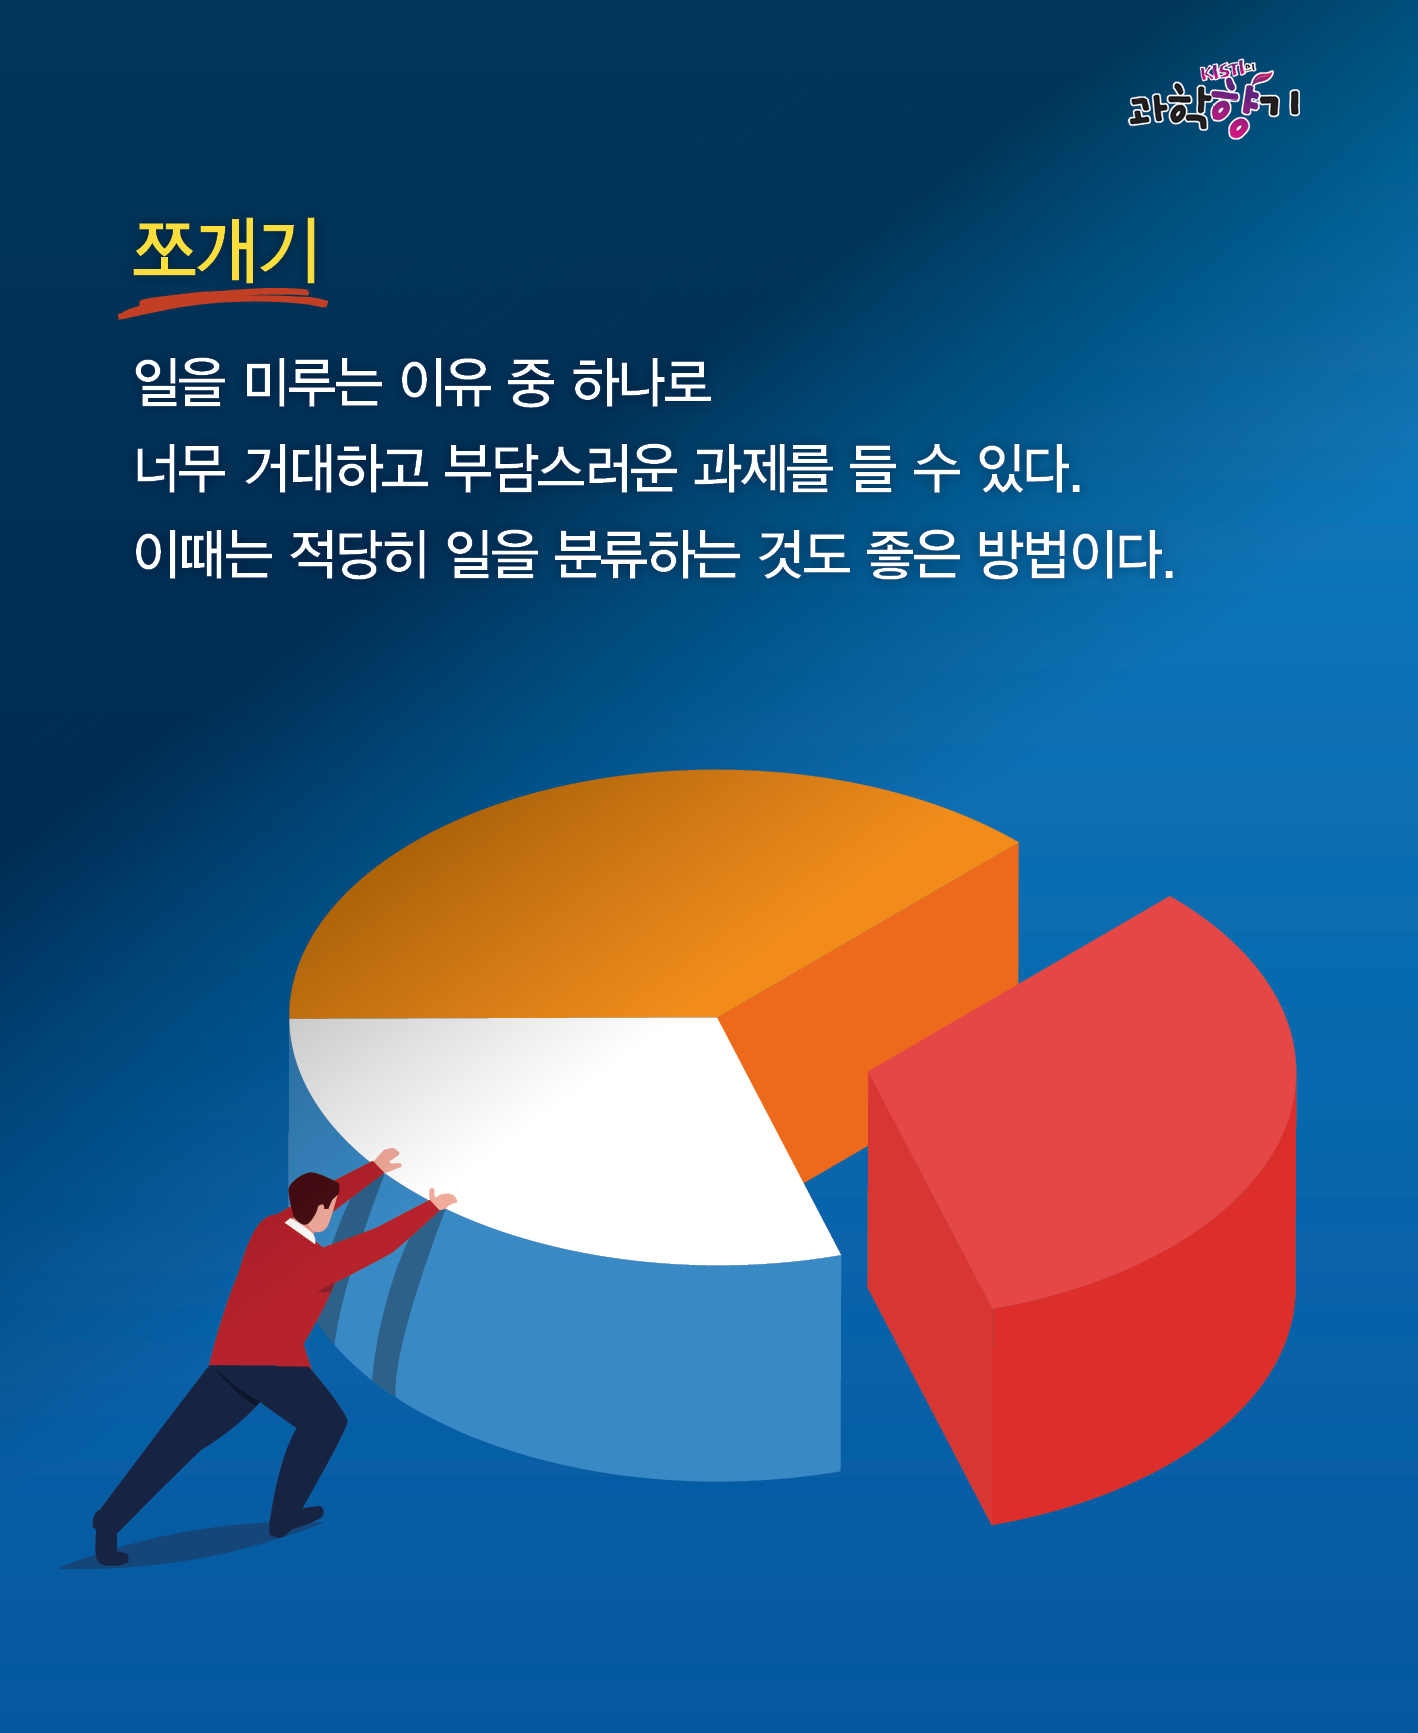 0129 카드뉴스 최종 200dpi 10